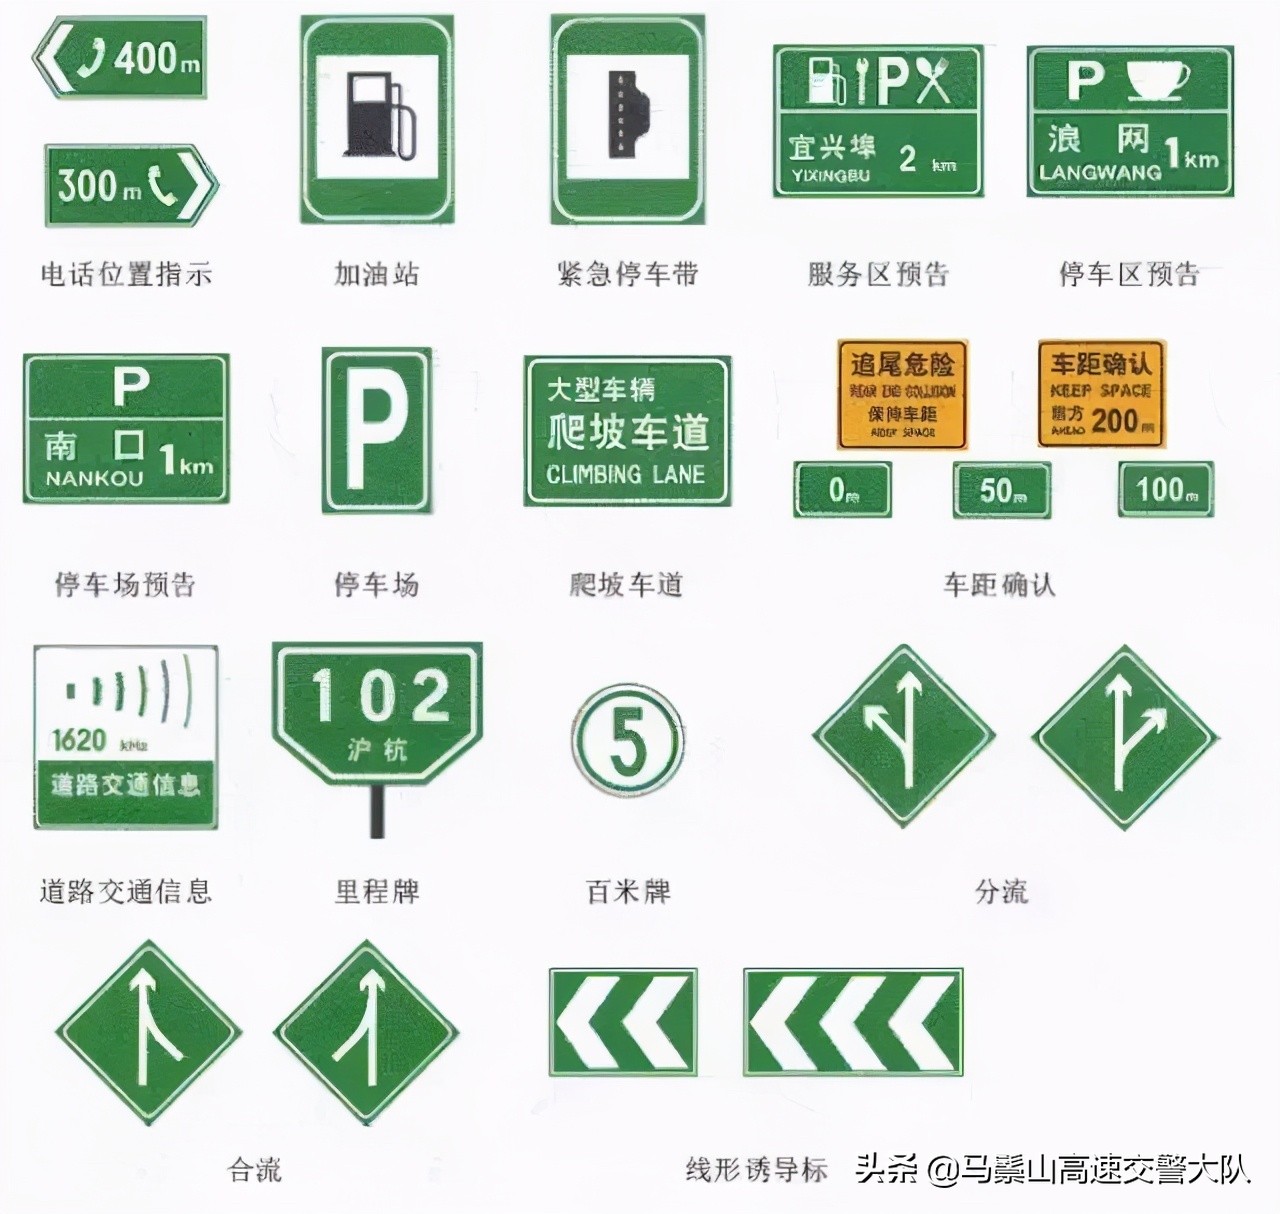 道路交通标志 100个交通标志图